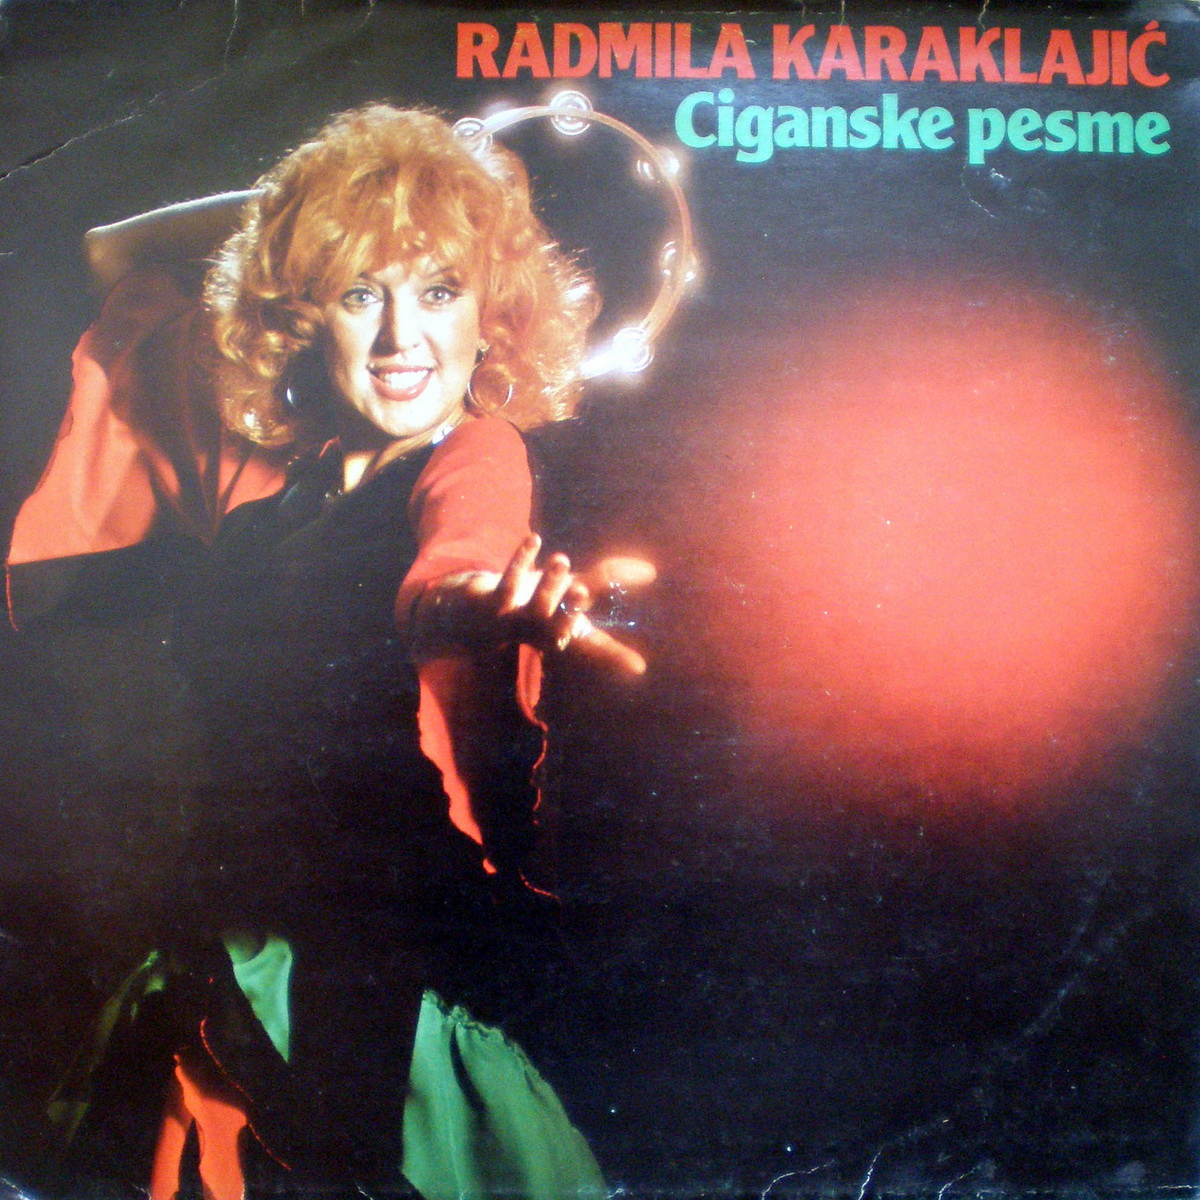 Radmila Karaklajic 1981 Ciganske pesme a